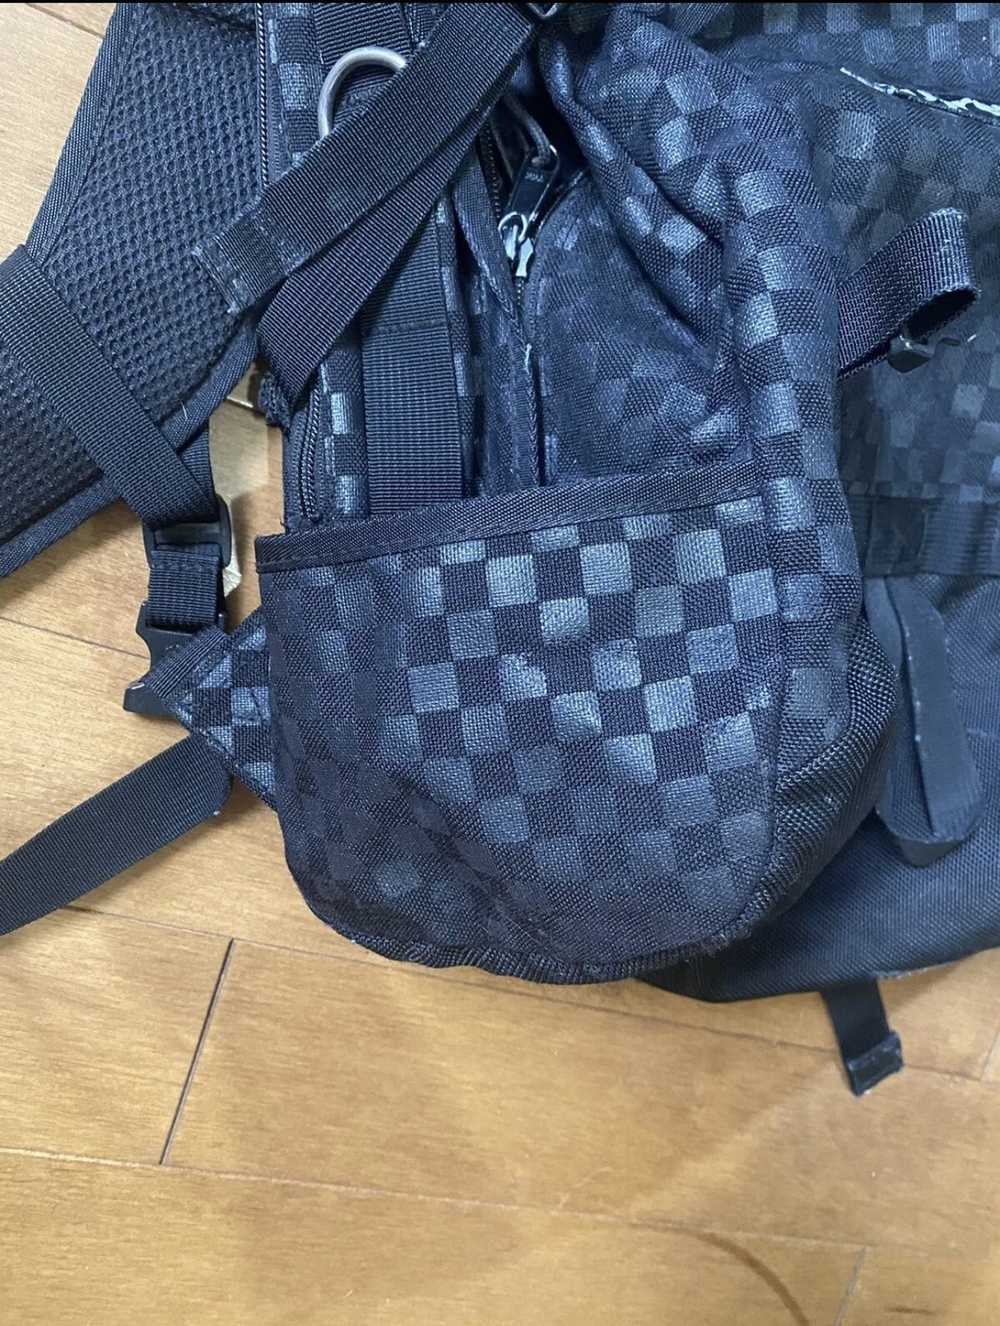 Supreme Supreme Checkered Damier Backpack (Black) SS1… - Gem